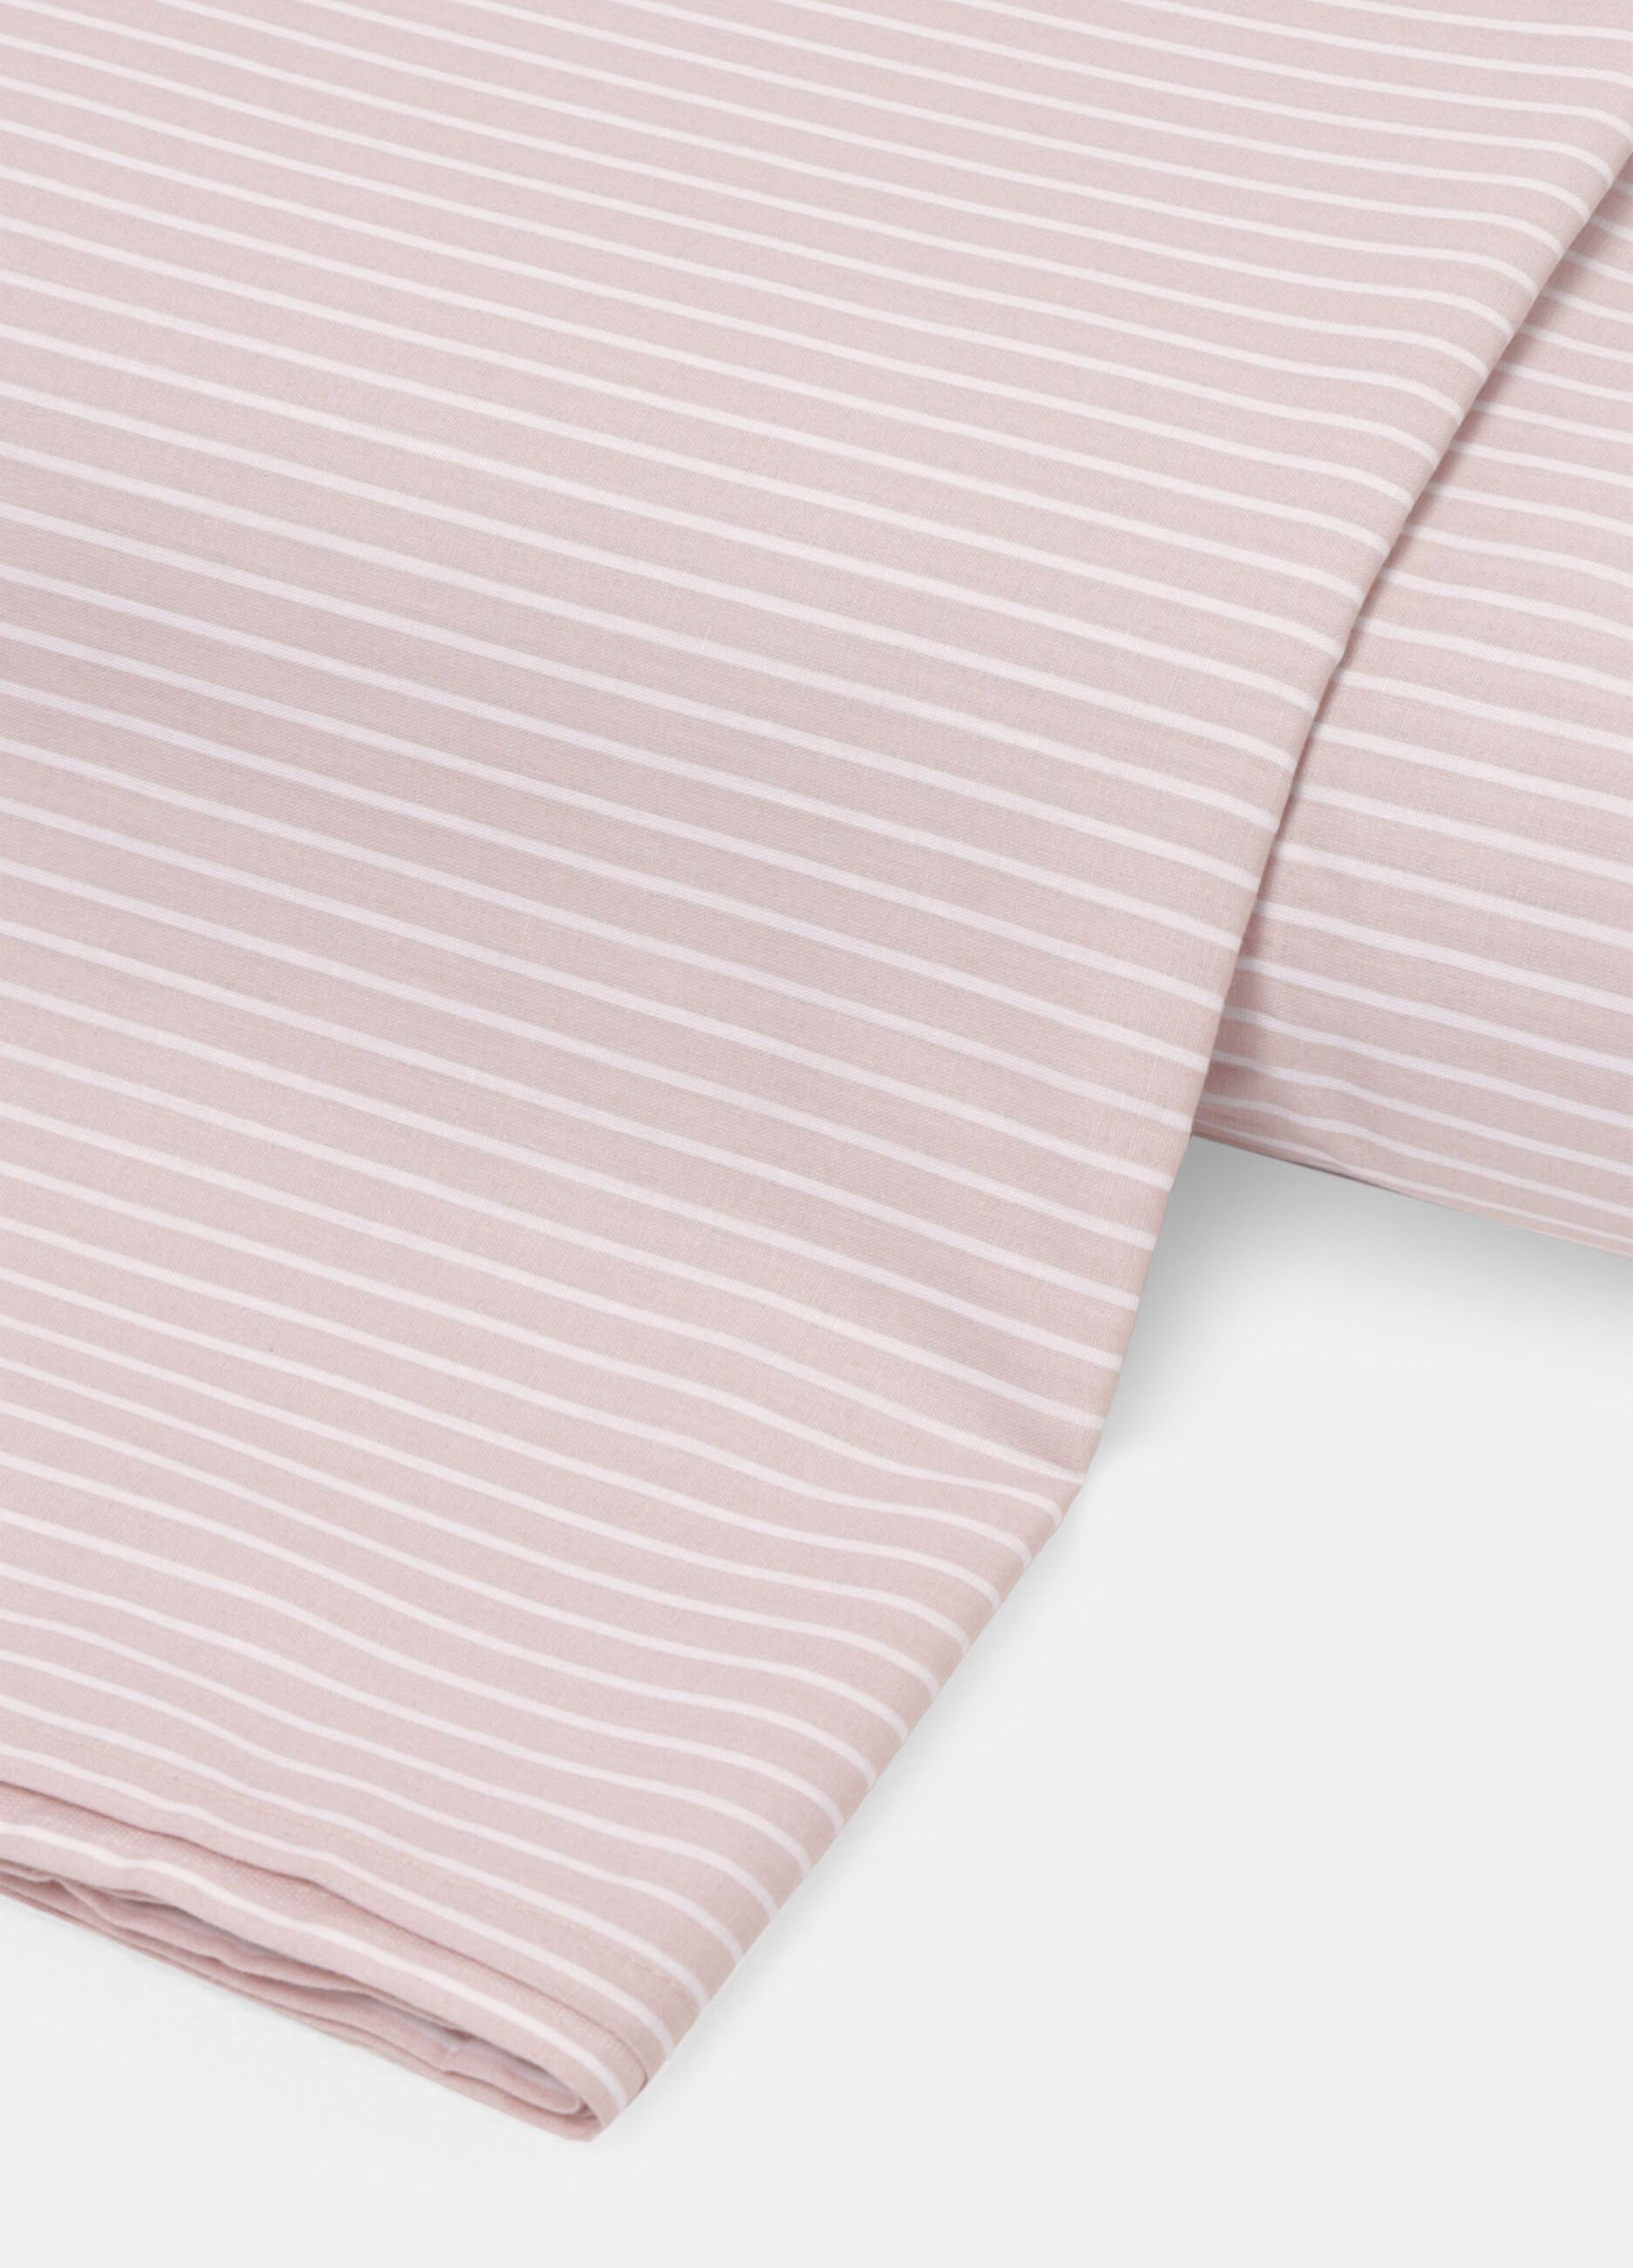 Funda nórdica de rayas de algodón cama individual